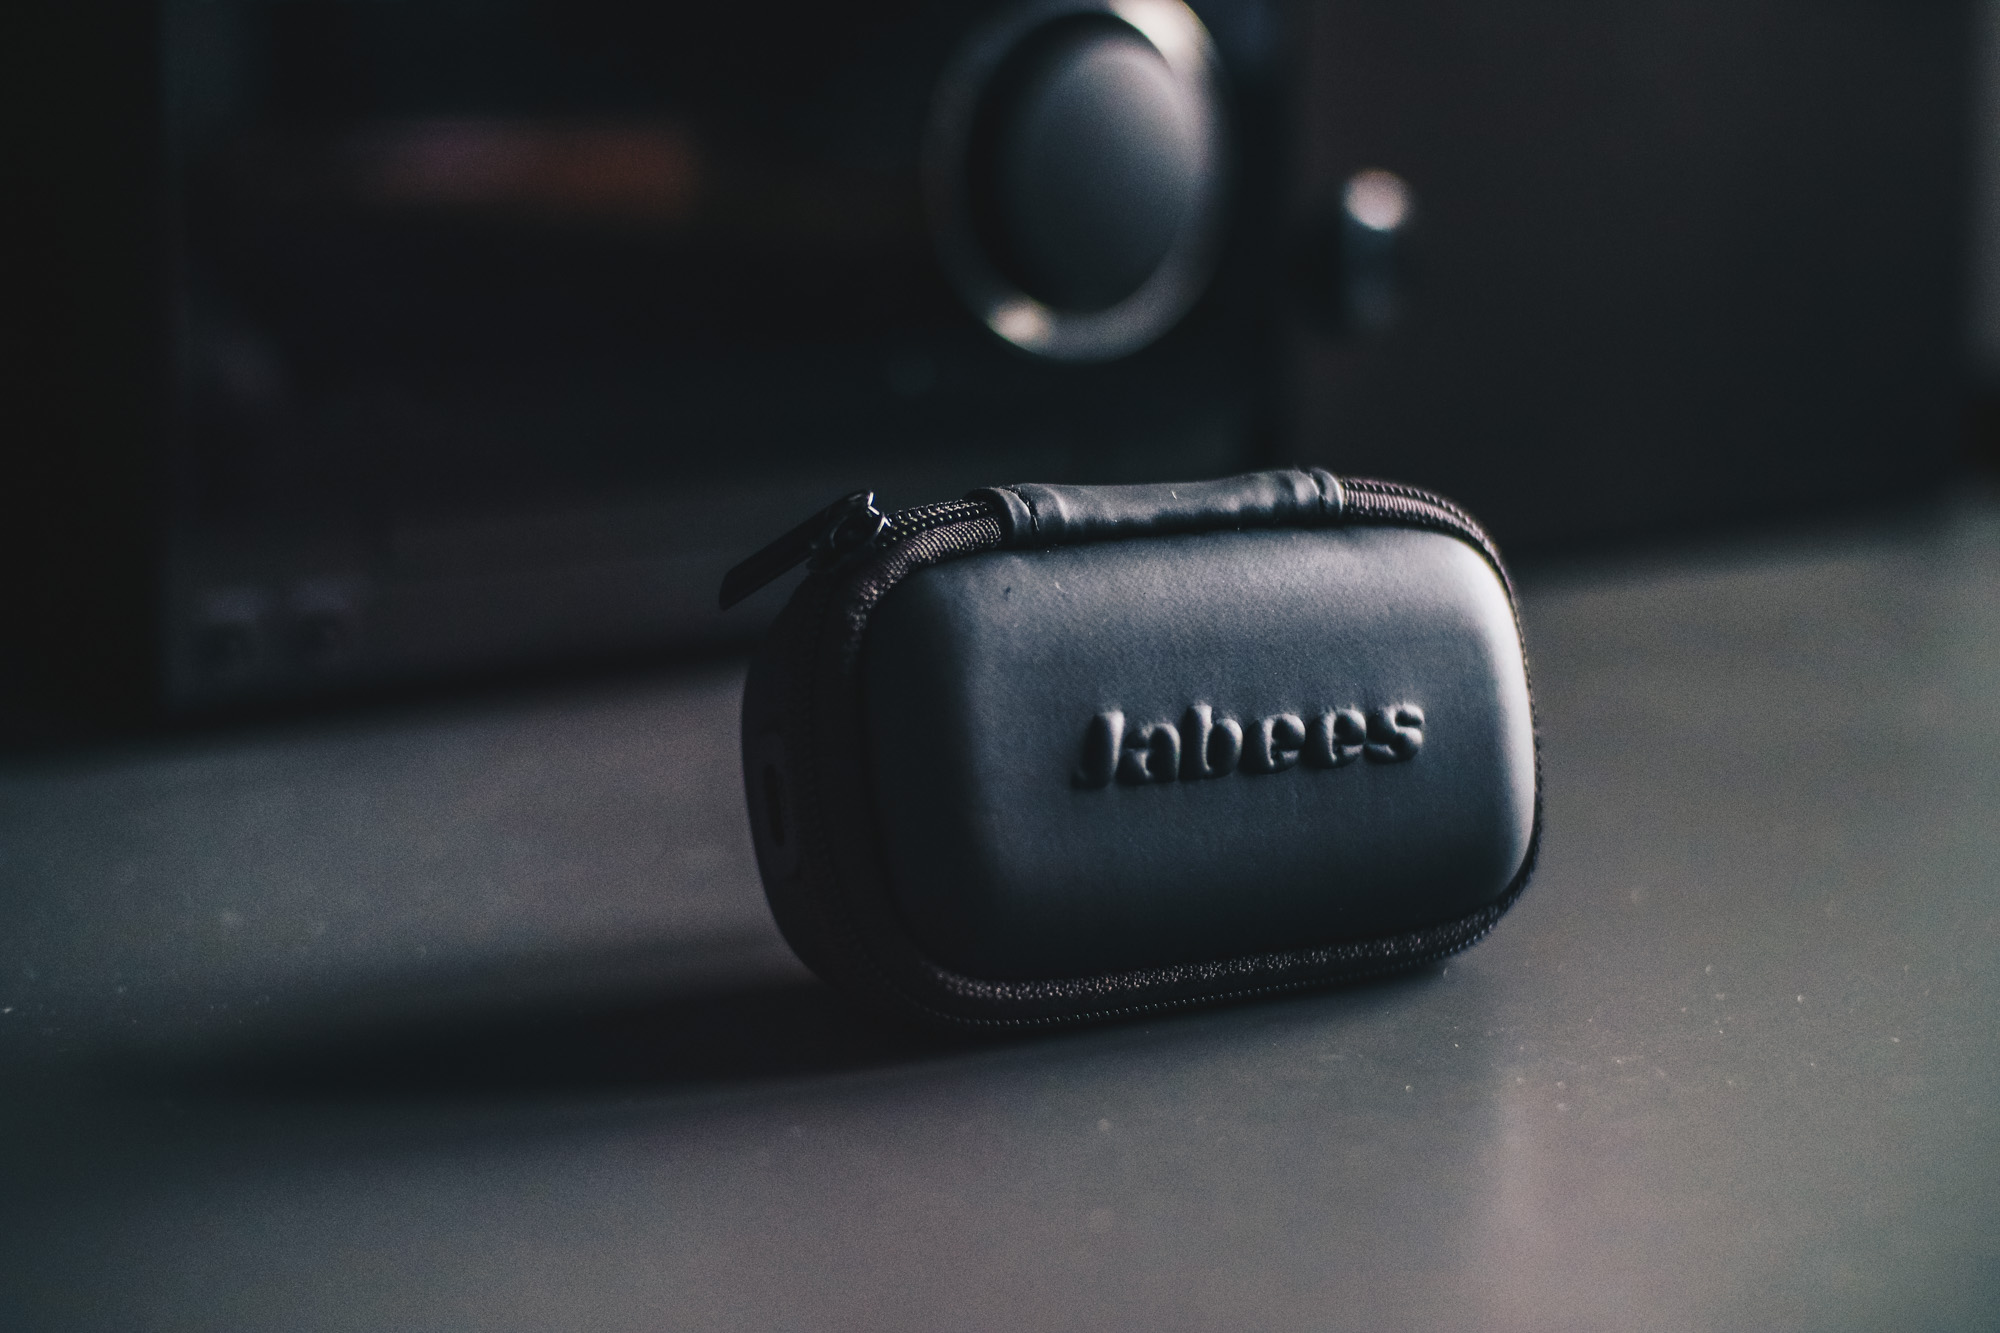 Jabees Beebuds wireless earphones